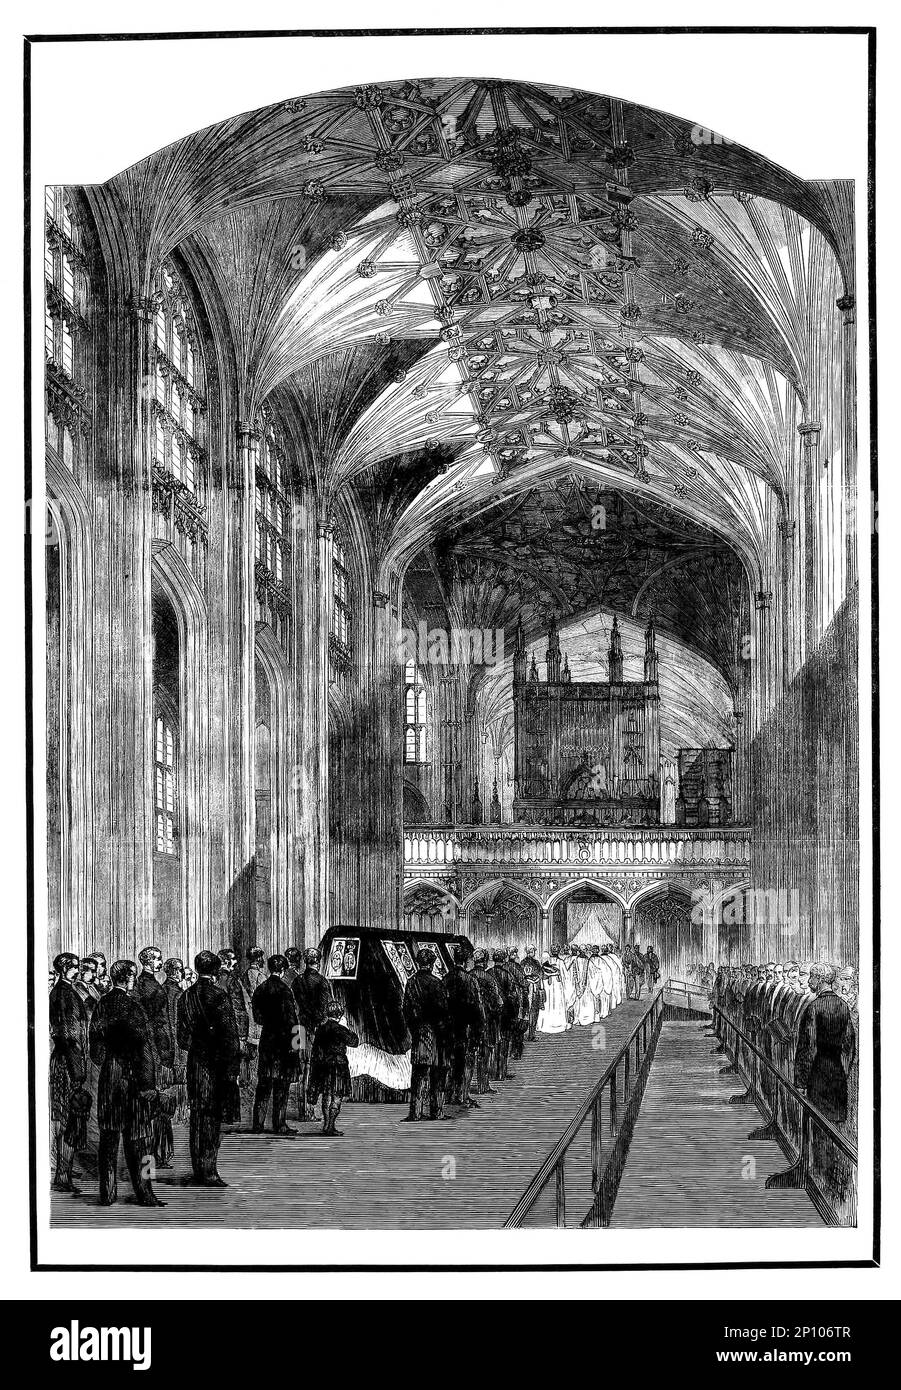 La procession royale dans la nef de la chapelle Saint-Georges dans le château de Windsor, après la mort précoce de la fièvre typhoïde du prince Albert de Saxe-Coburg et Gotha (1819-1861), consort du monarque britannique comme le mari de la reine Victoria. Banque D'Images